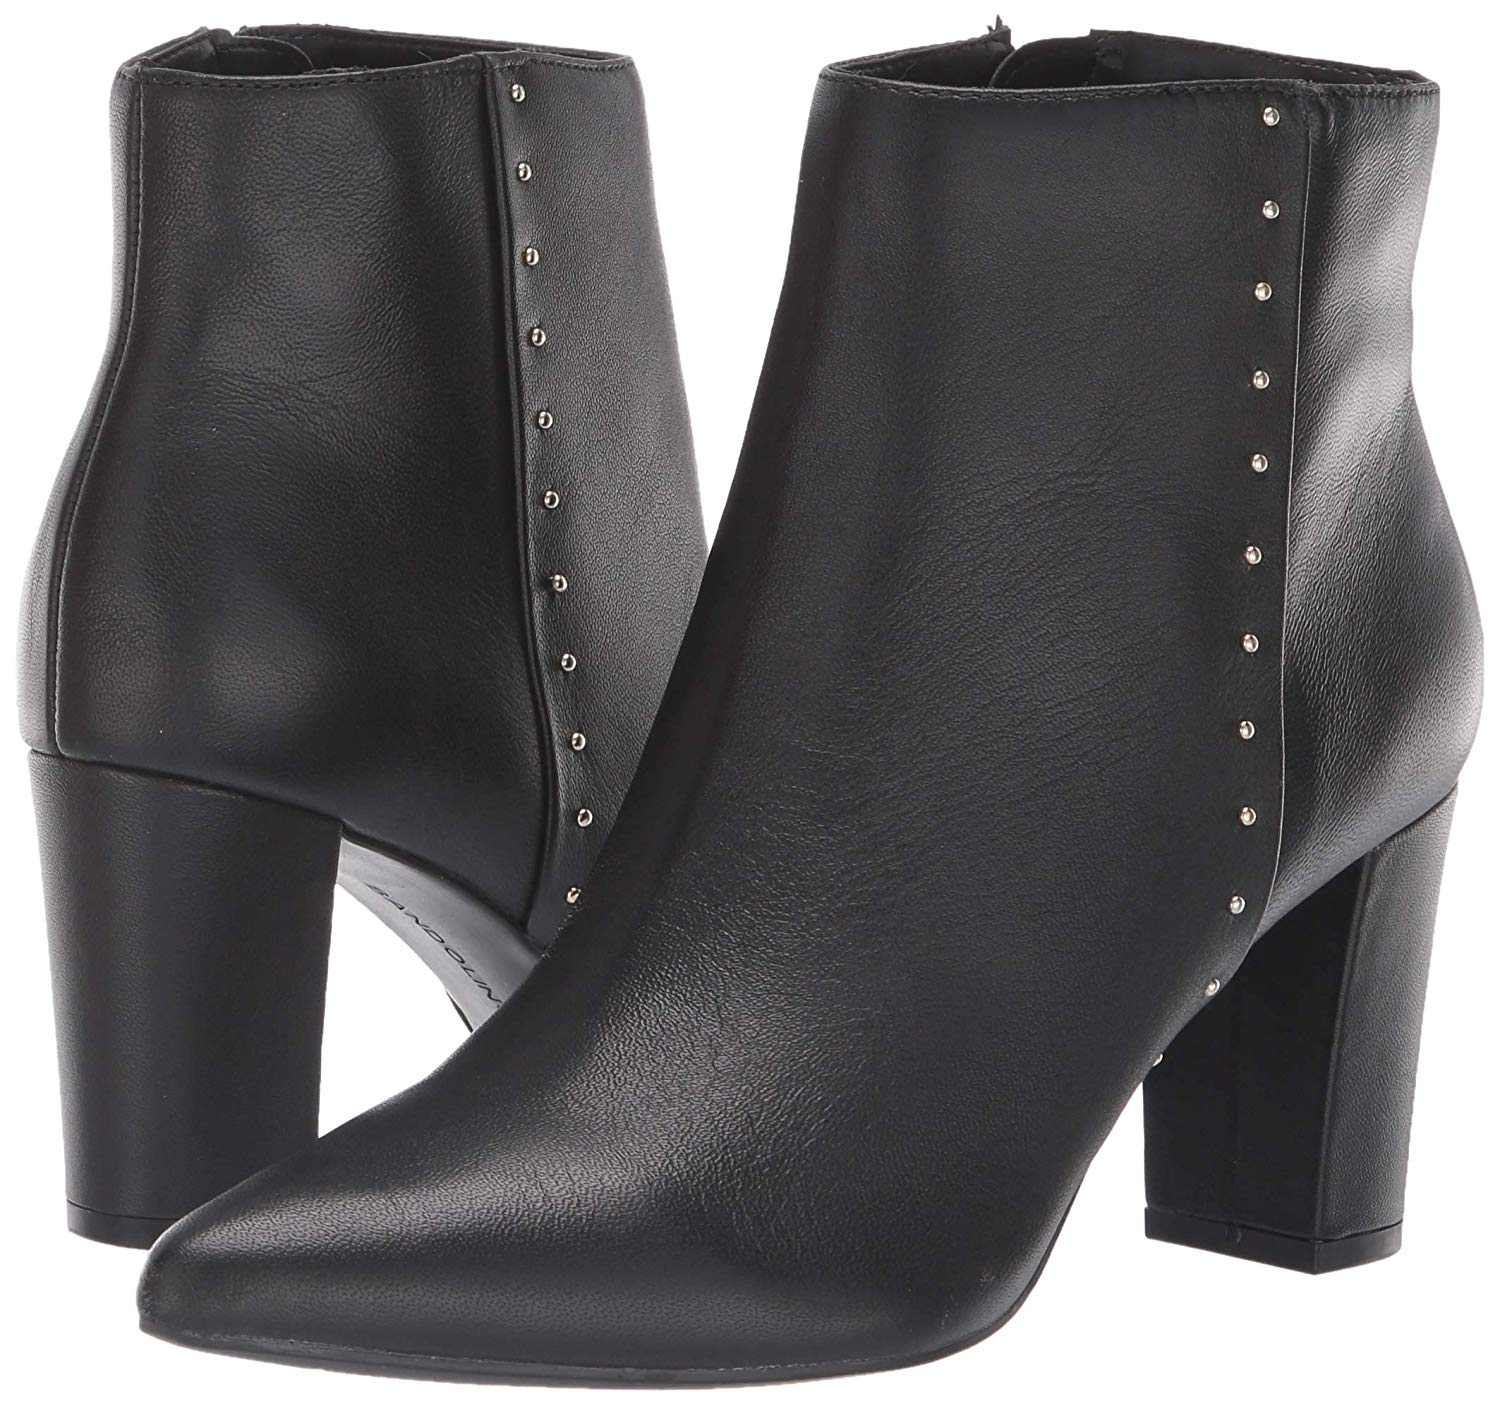 Bandolino Womens Zoila Leather Pointed Toe Ankle Fashion Boots Black Size EBay